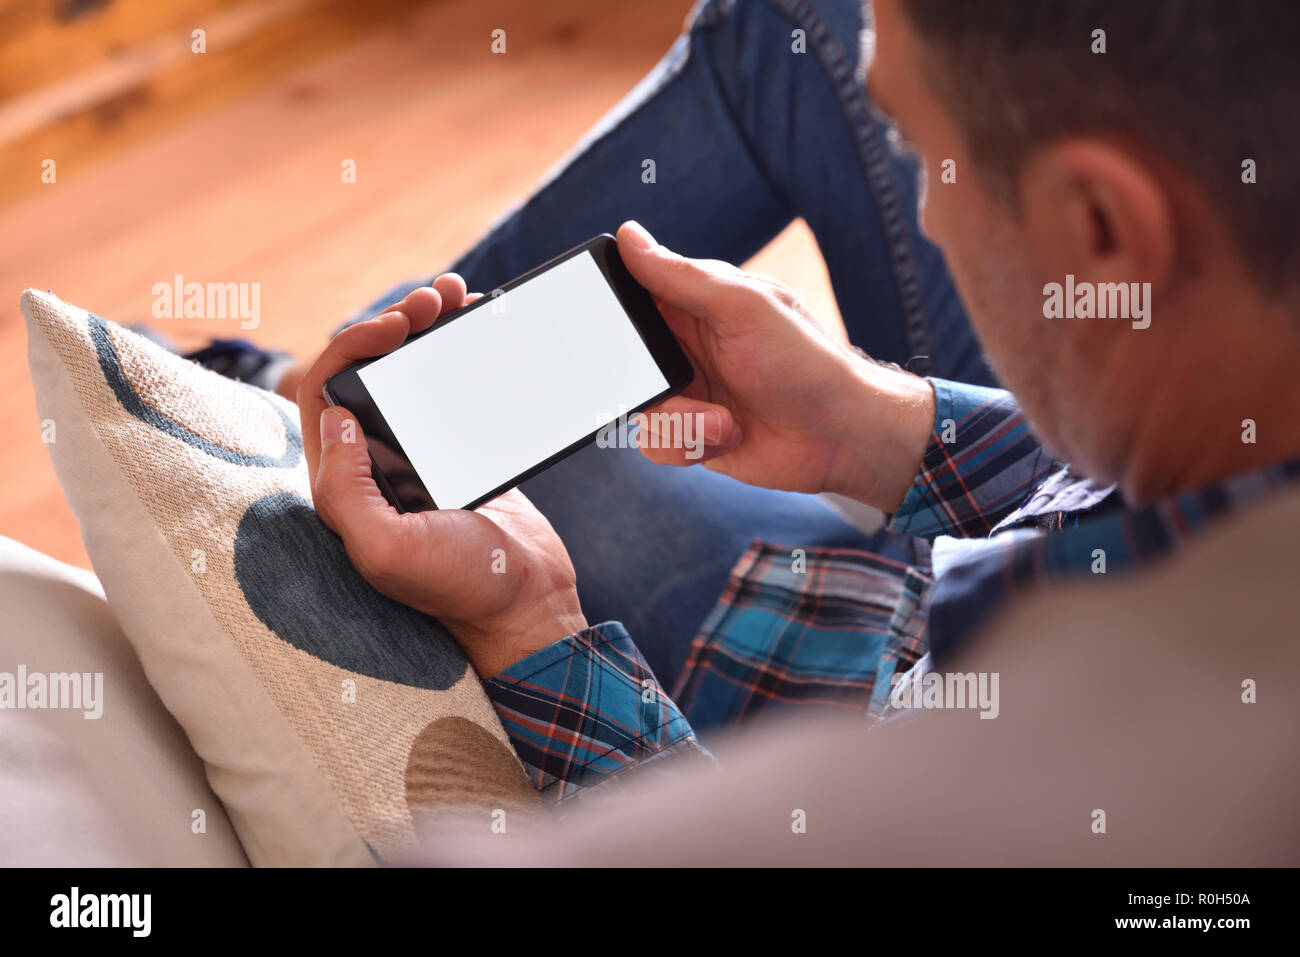 Erwachsenen Mann mit blauem Hemd und Jeans sitzt auf einem Sofa, multimediale Inhalte auf einem Smartphone. Aussichtspunkt angehoben Stockfoto